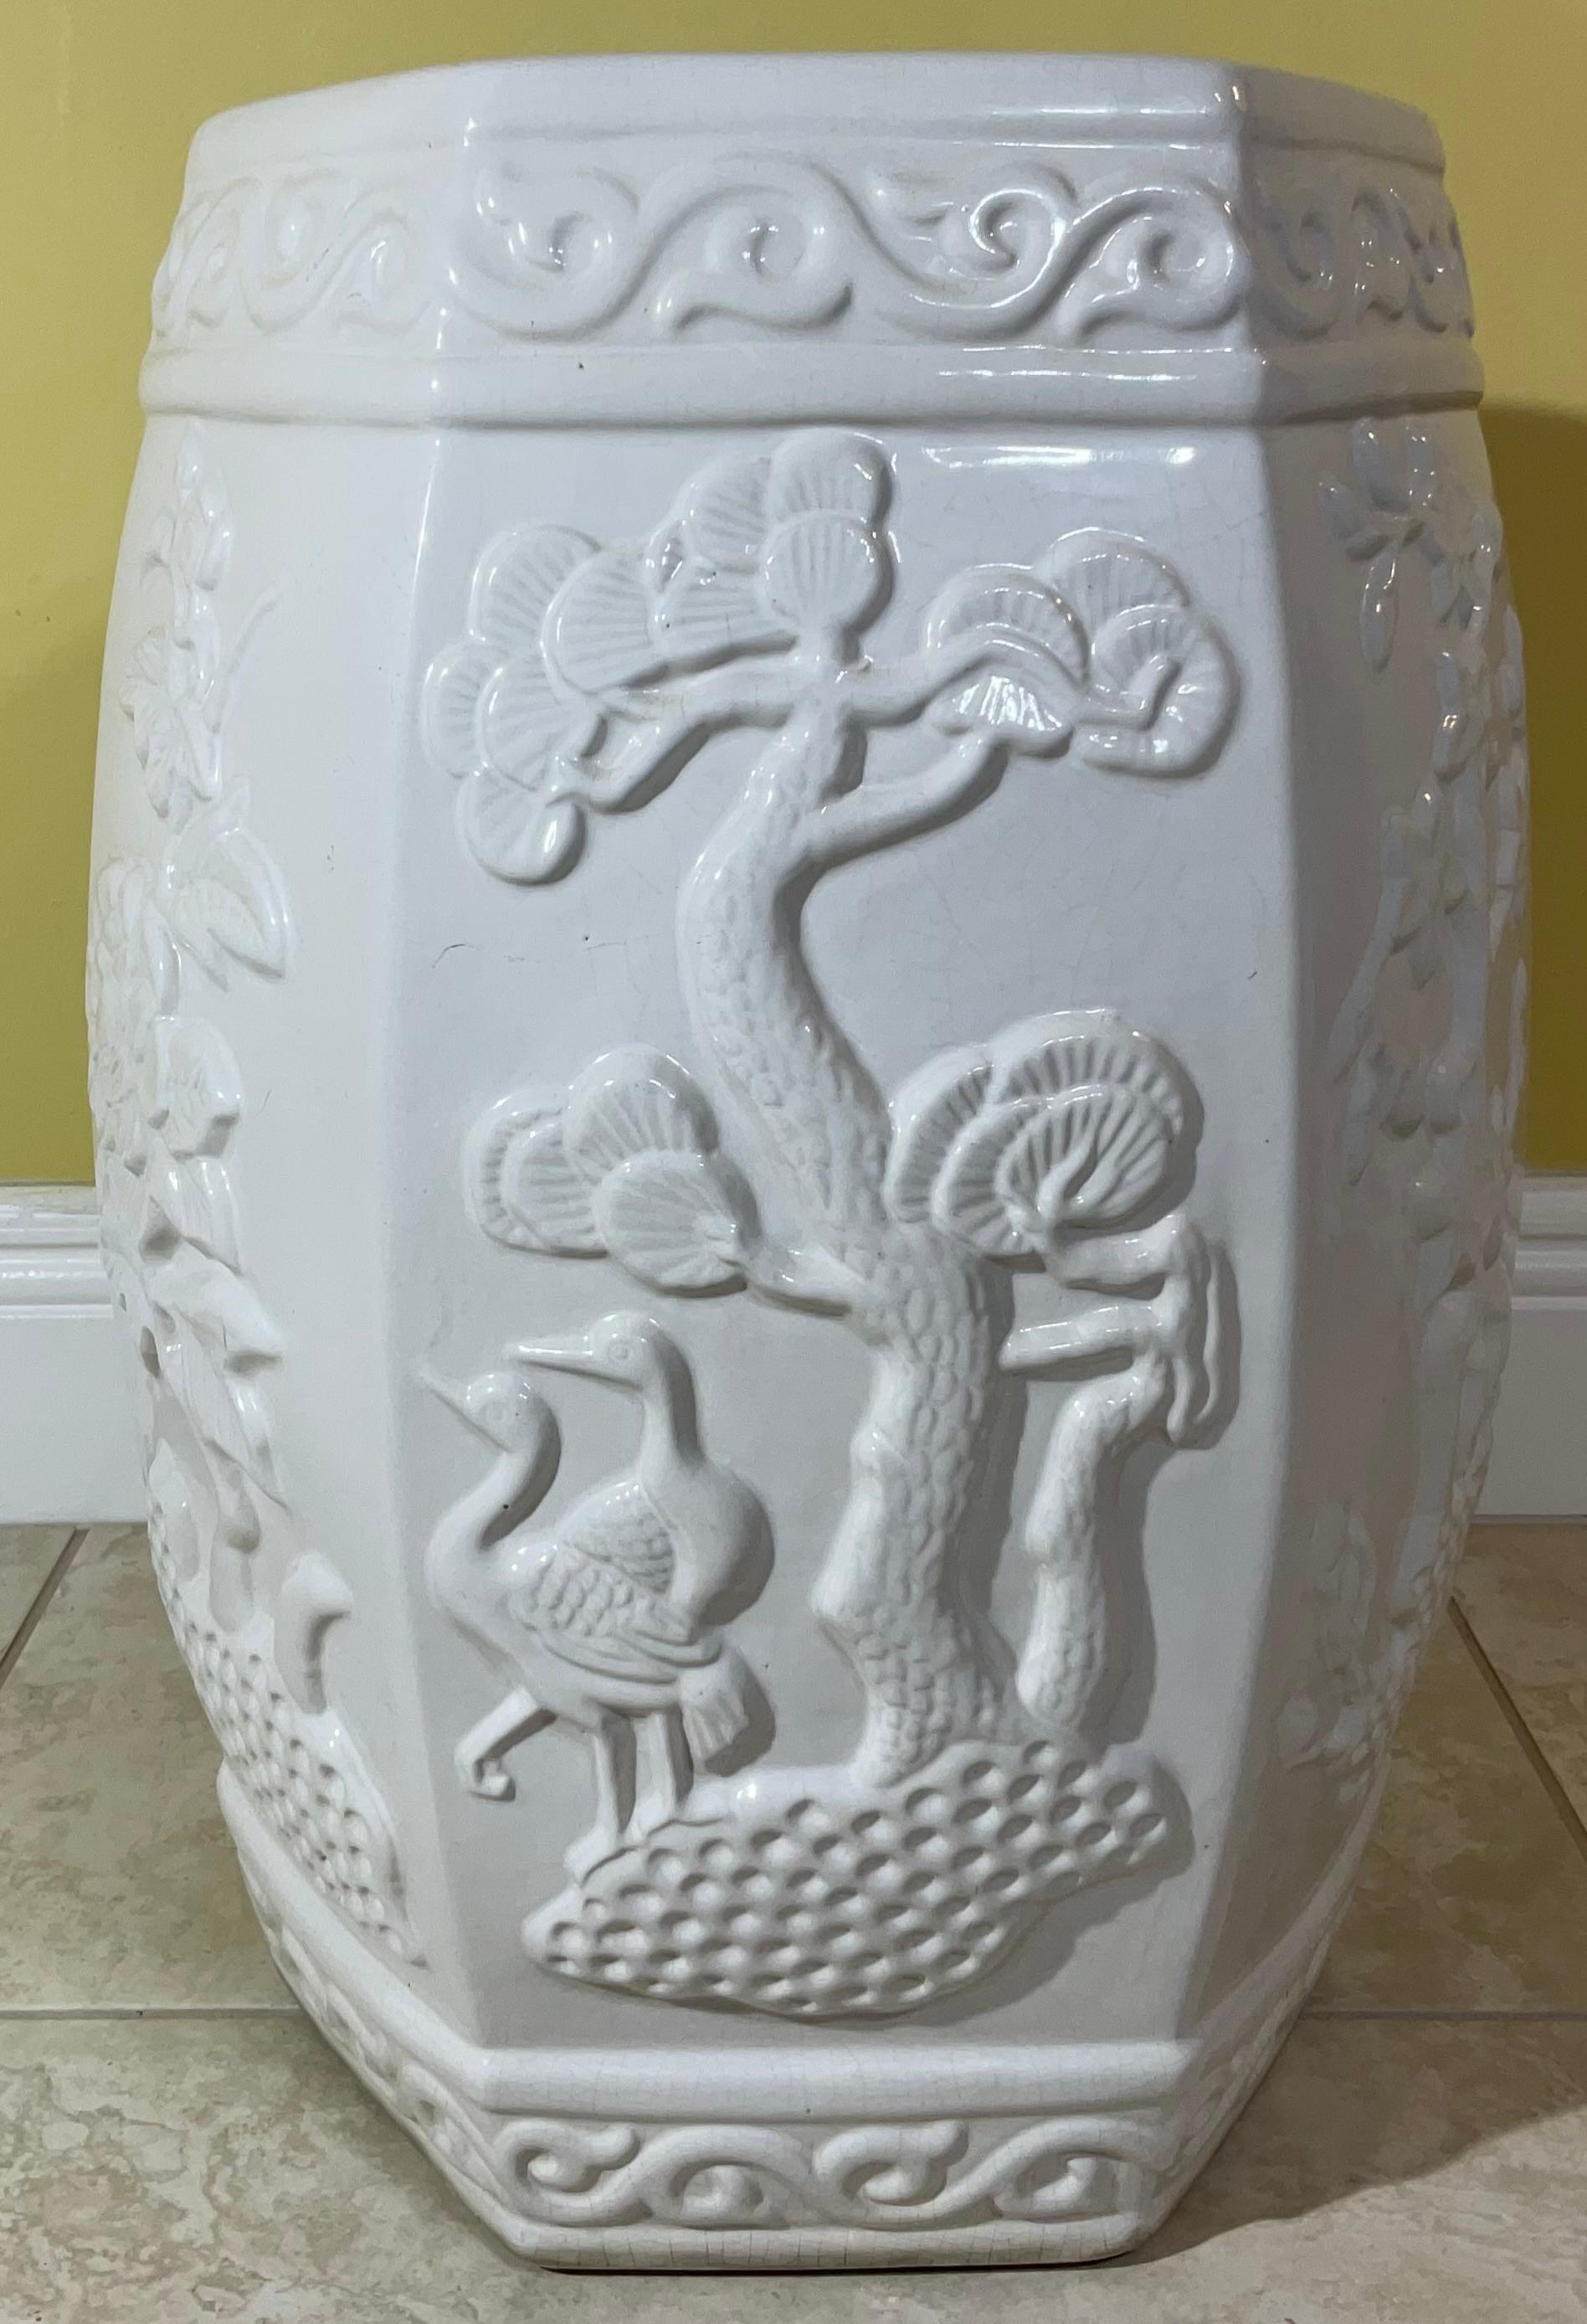 Sehr schöne Keramik Garten Hocker Tisch ist eine klassische chinesische sechs Seite Form von Gartendekor in einem guten monochromen weißen Glasur, verziert mit Vogel Blumen und Pflanzen Motive mit oberen und unteren Scroll-Band der chinesischen